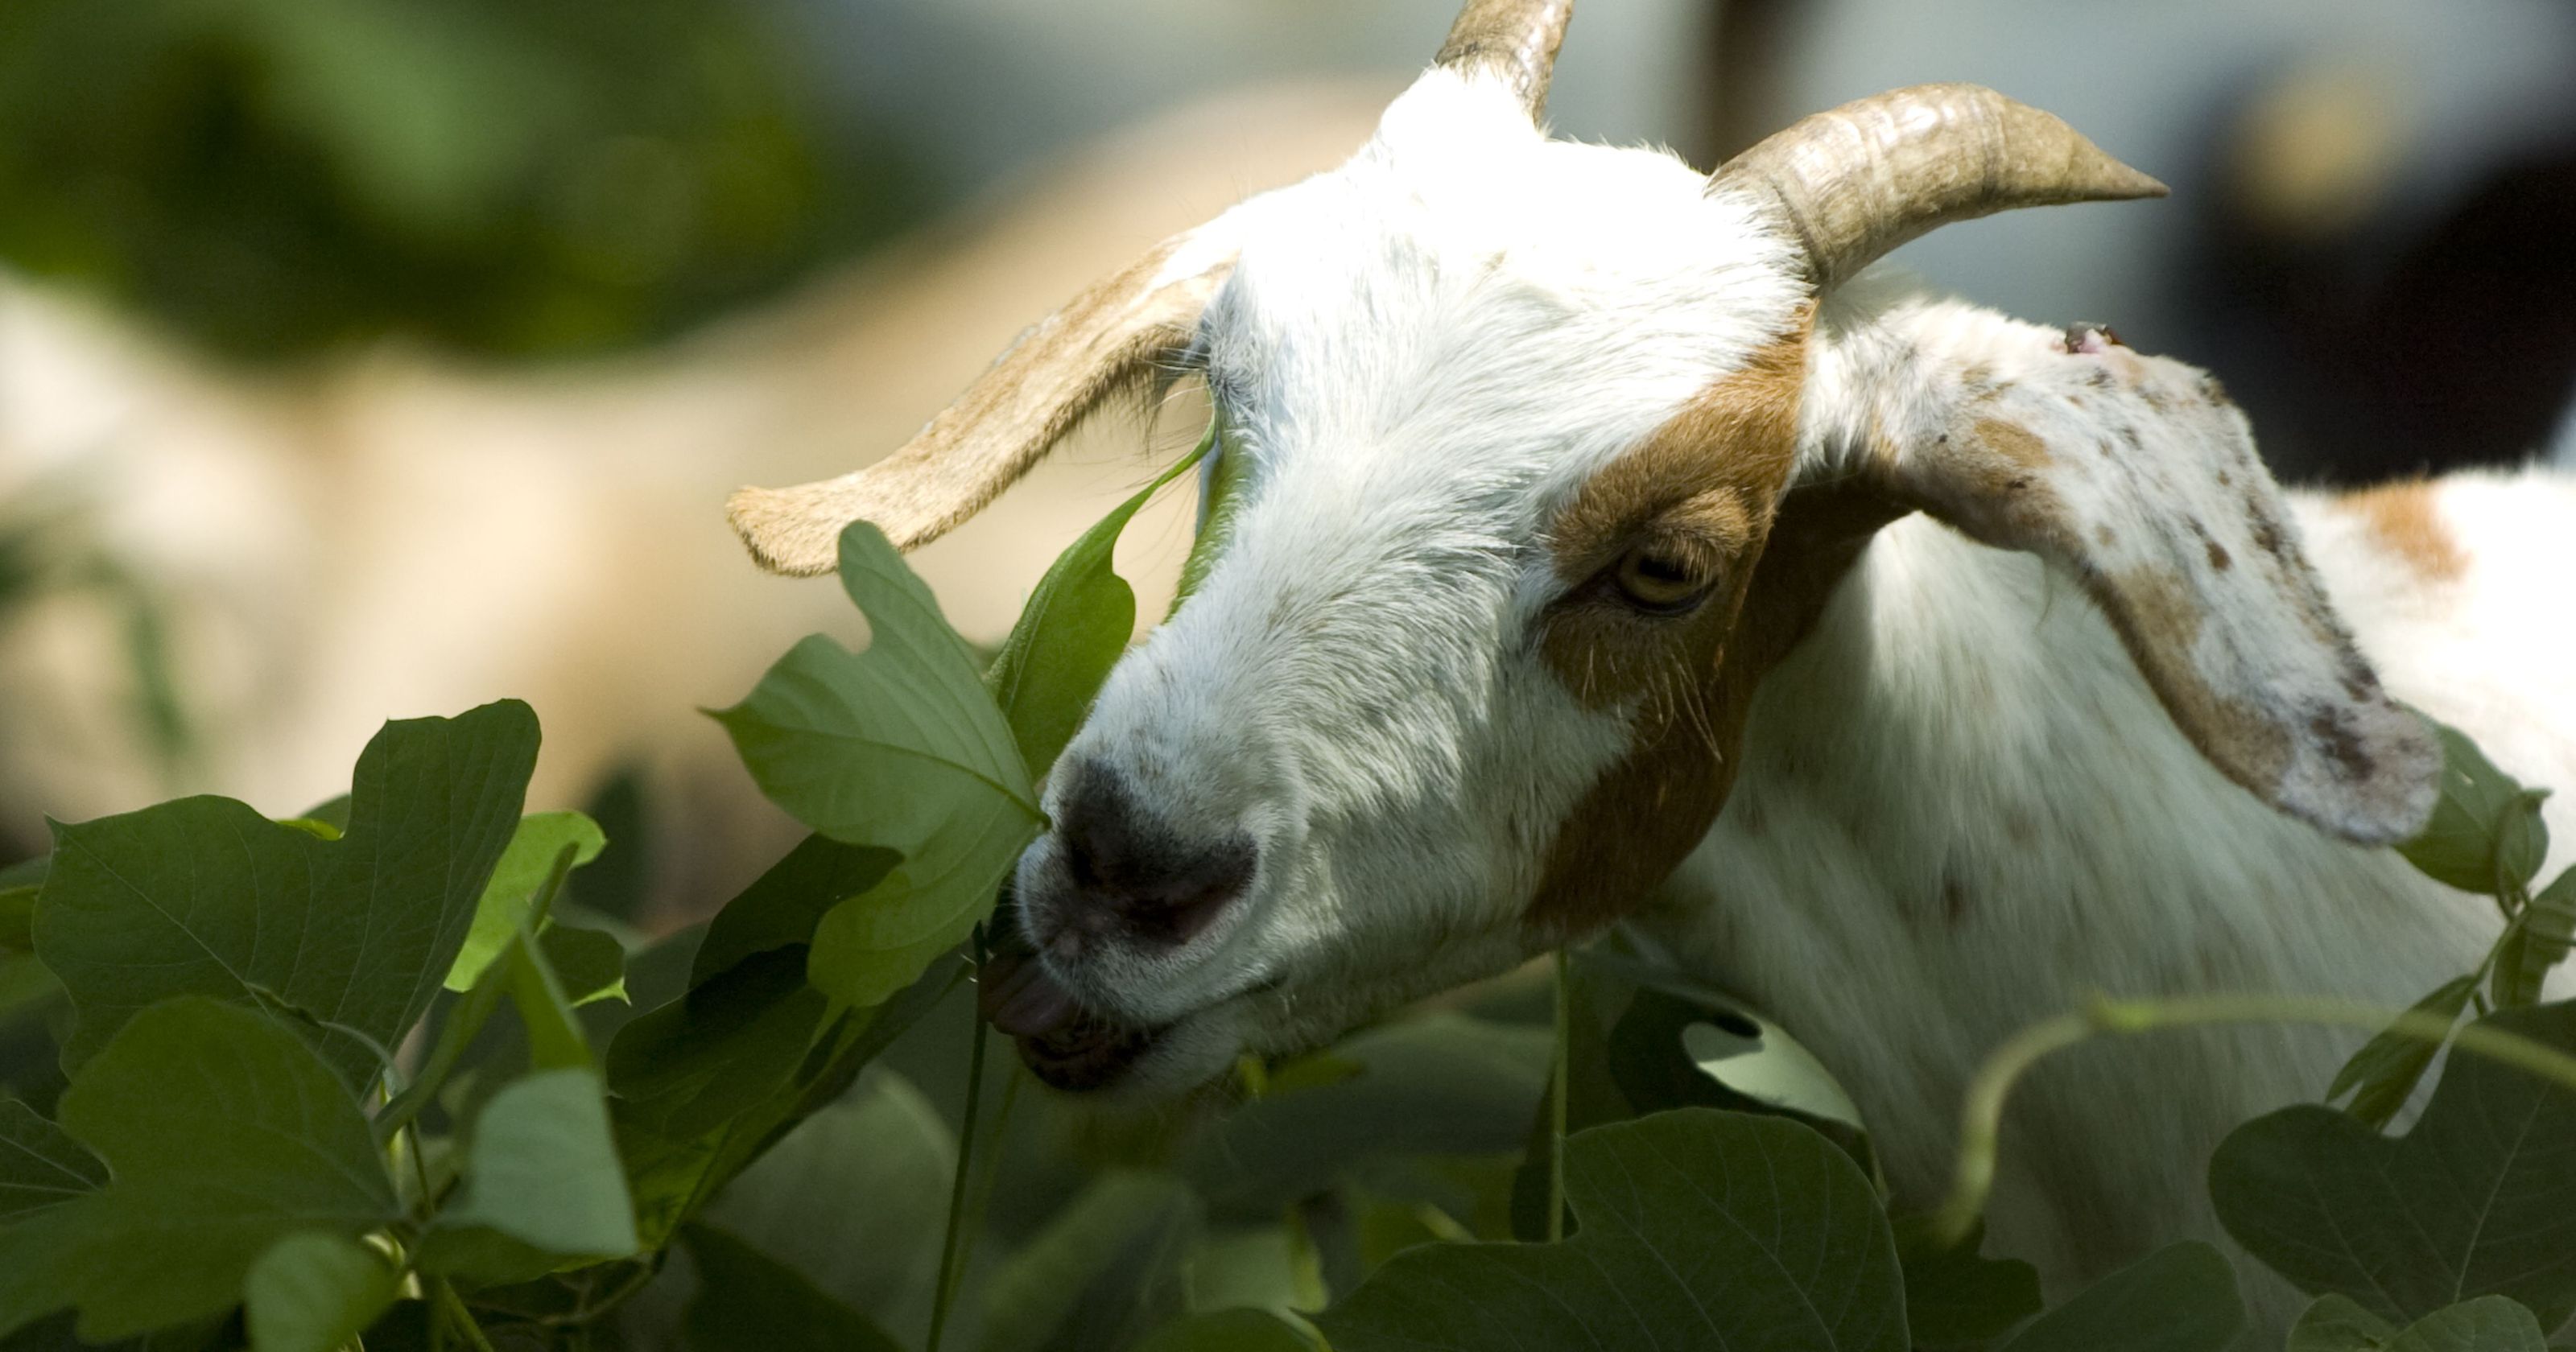 Goat eating kudzu.jpg